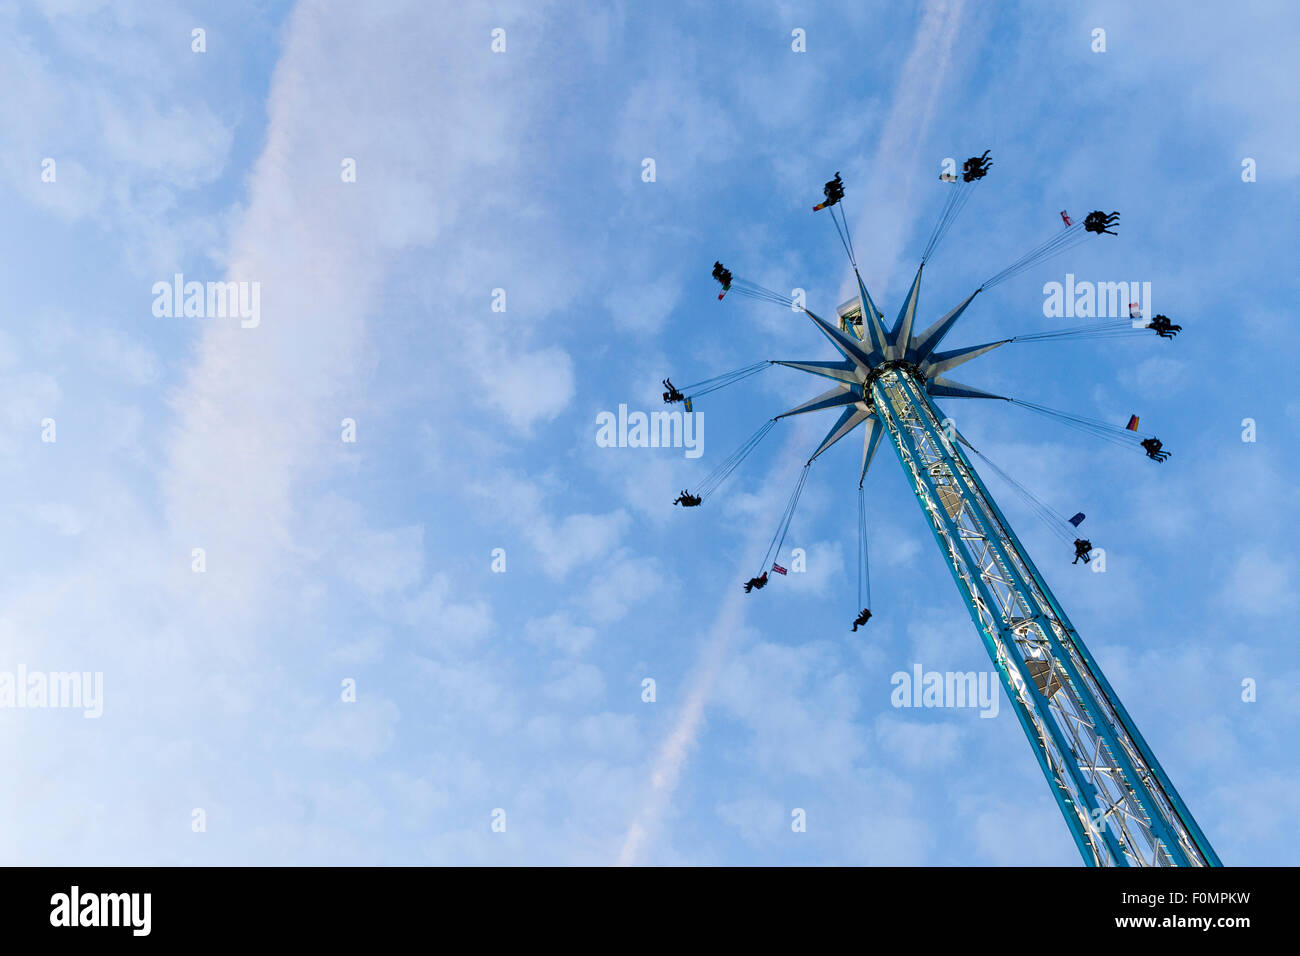 Spinning Top Festplatz Spiel im Winter-Wunderland zu Weihnachten, London Stockfoto